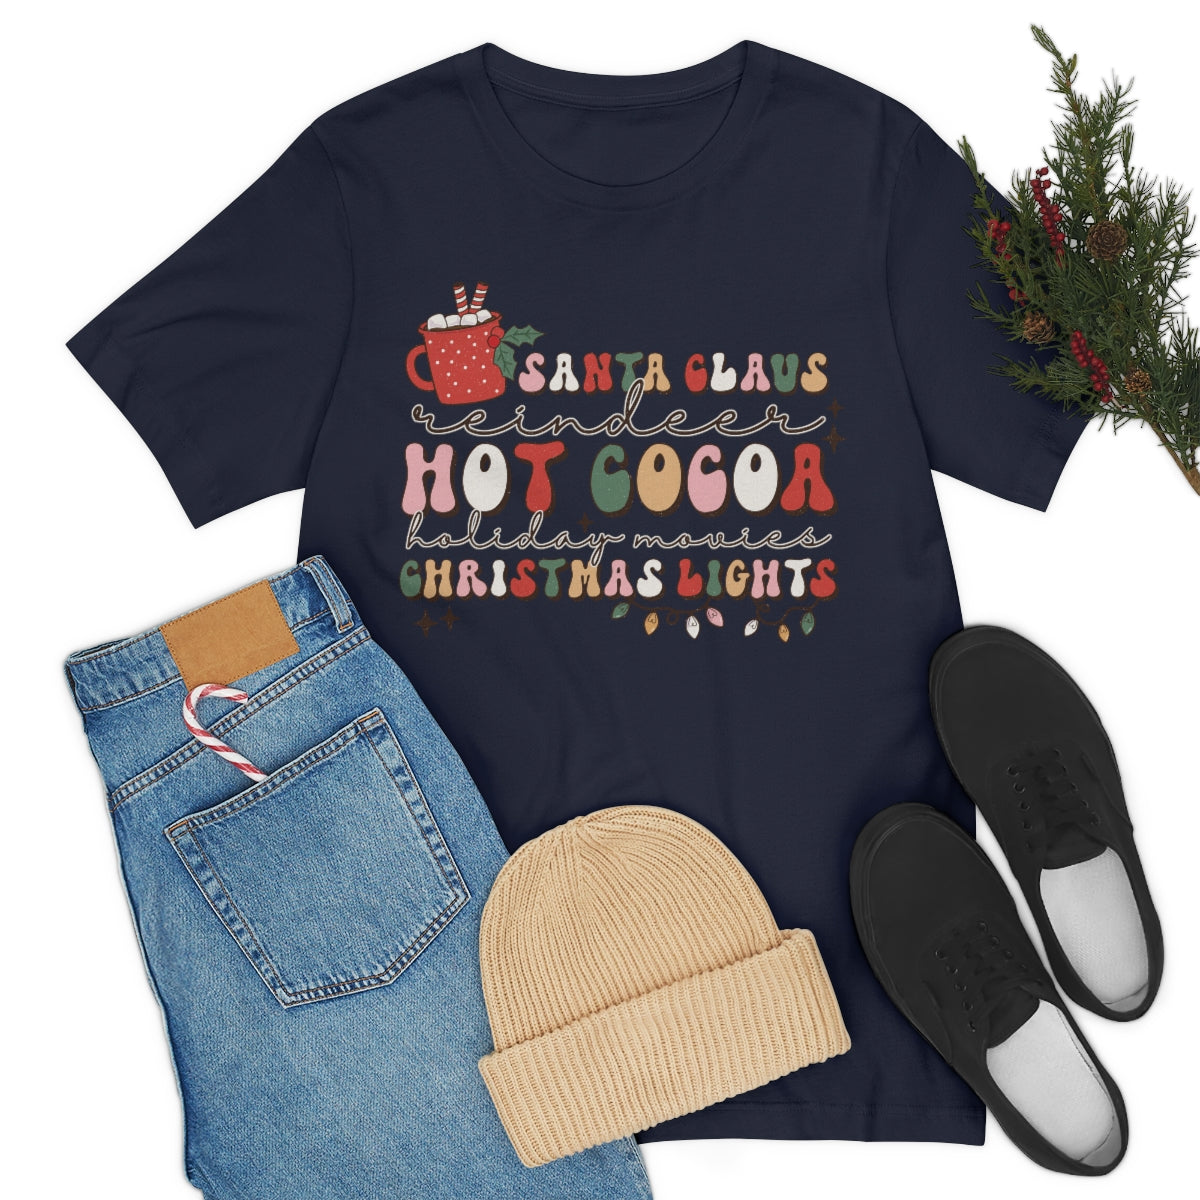 Santa Claus Hot Cocoa And Christmas Lights Shirt